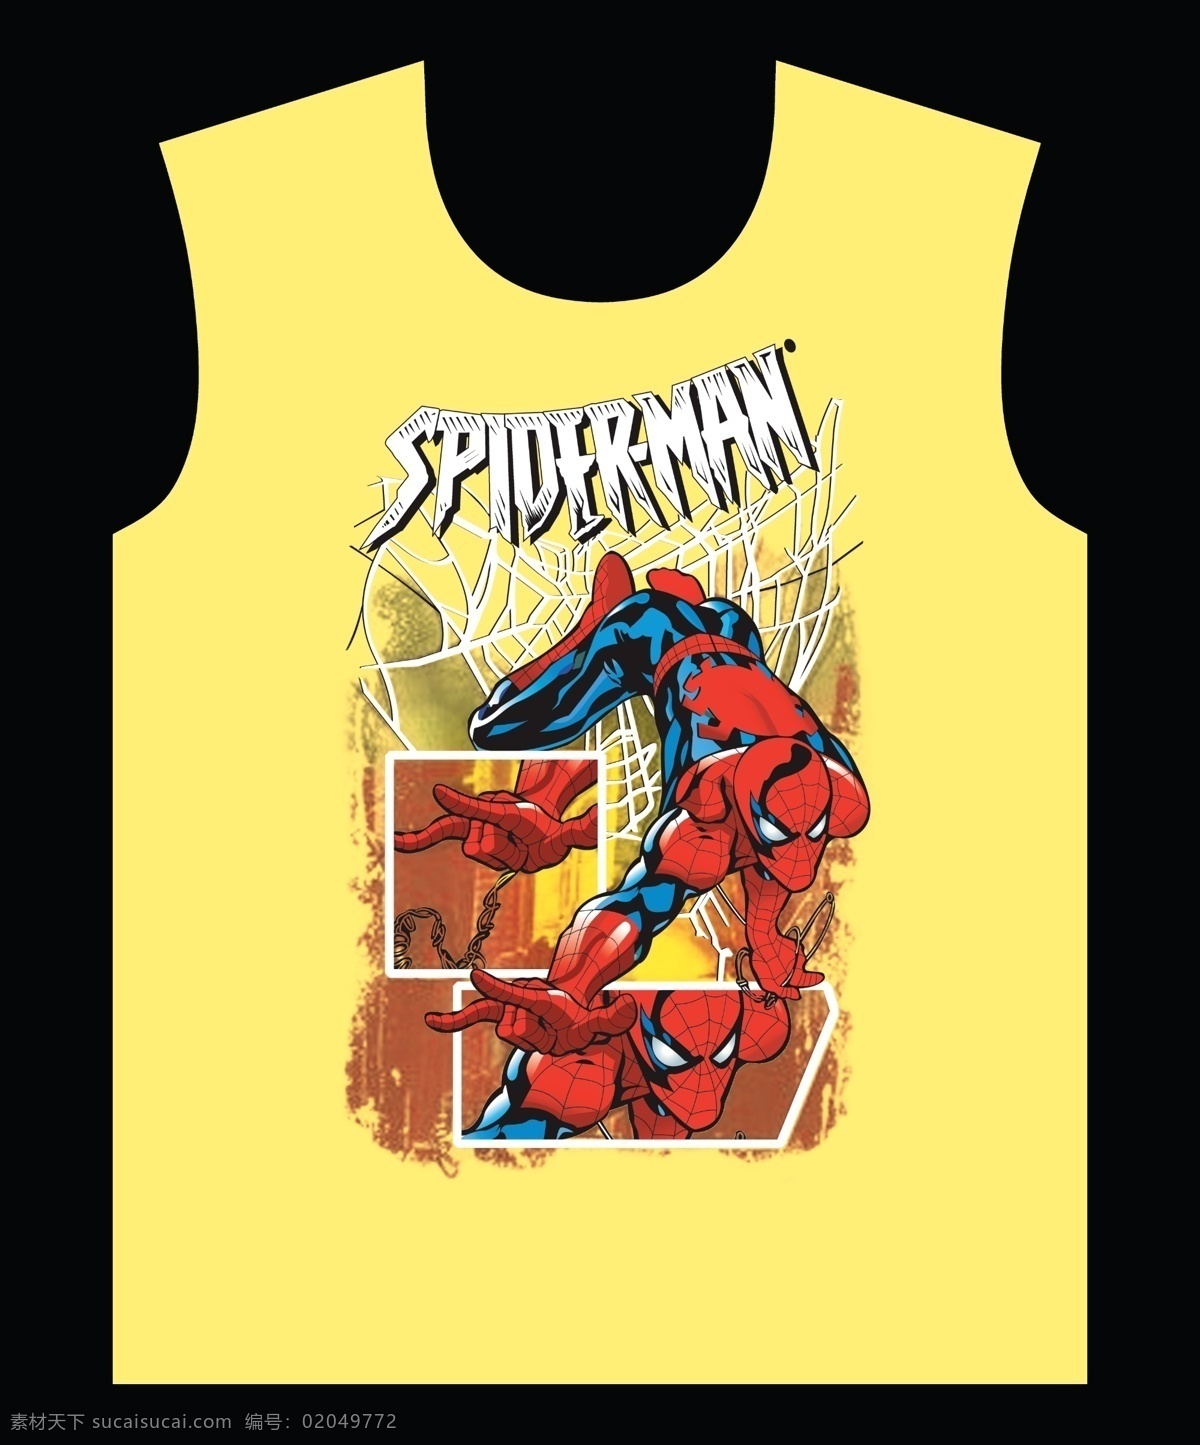 蜘蛛侠 漫画 风格 t 恤 服装 印花 图案 漫画风格 t恤 服装印花 图案设计 动漫动画 动漫人物